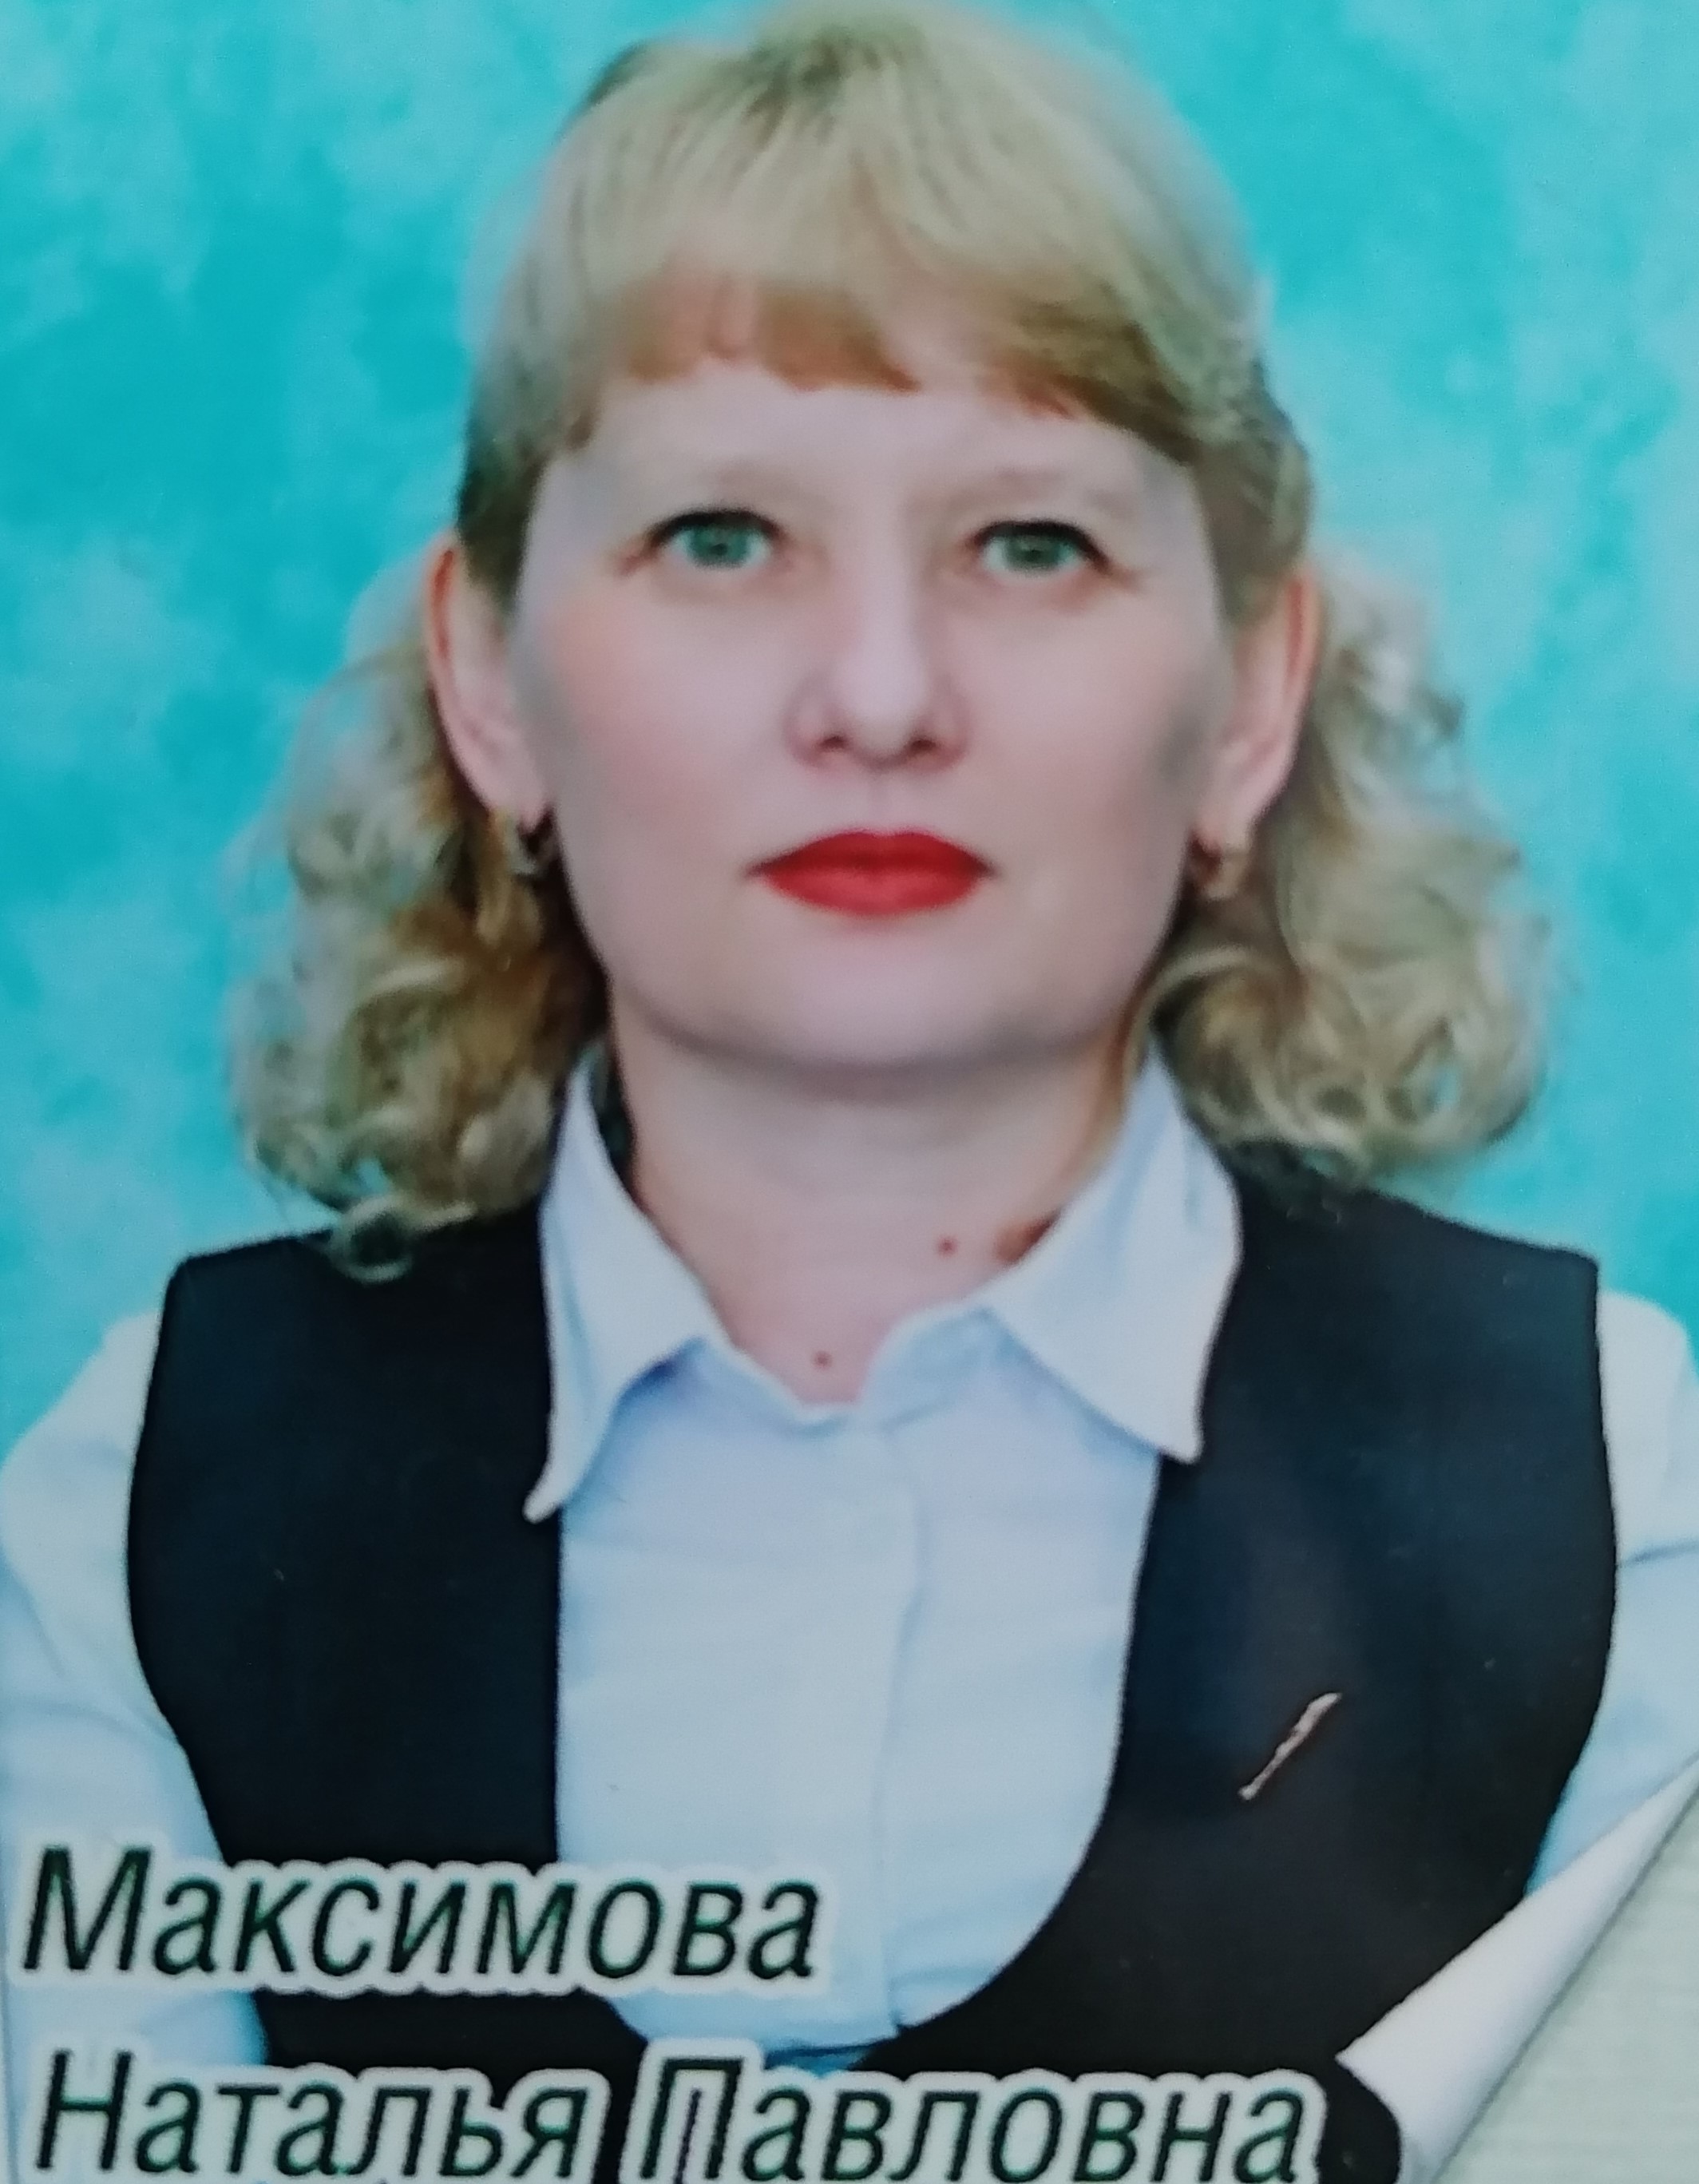 Максимова Наталья Павловна.